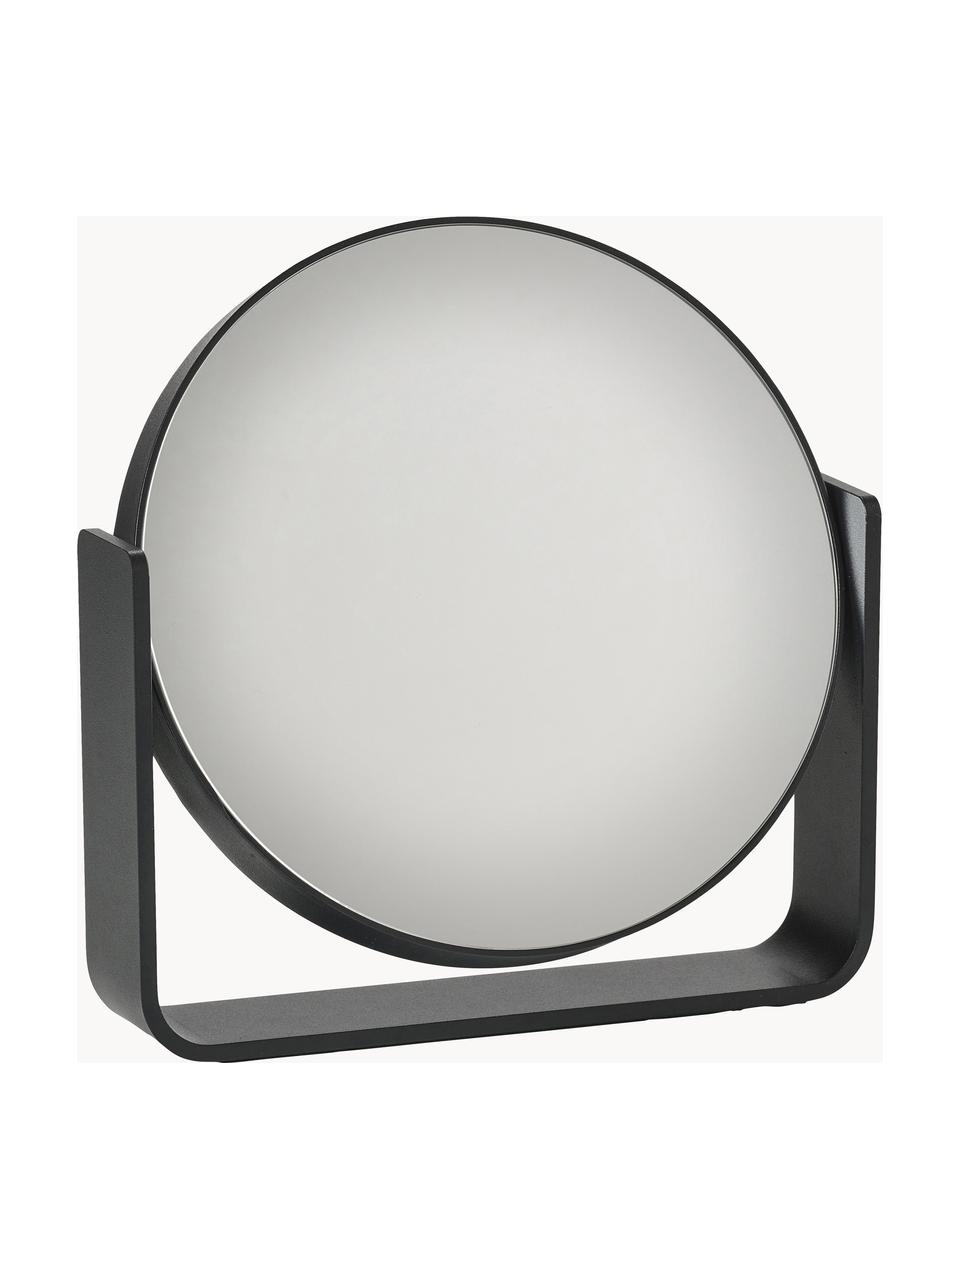 Runder Kosmetikspiegel Ume mit Vergrößerung, Schwarz, B 19 x H 20 cm